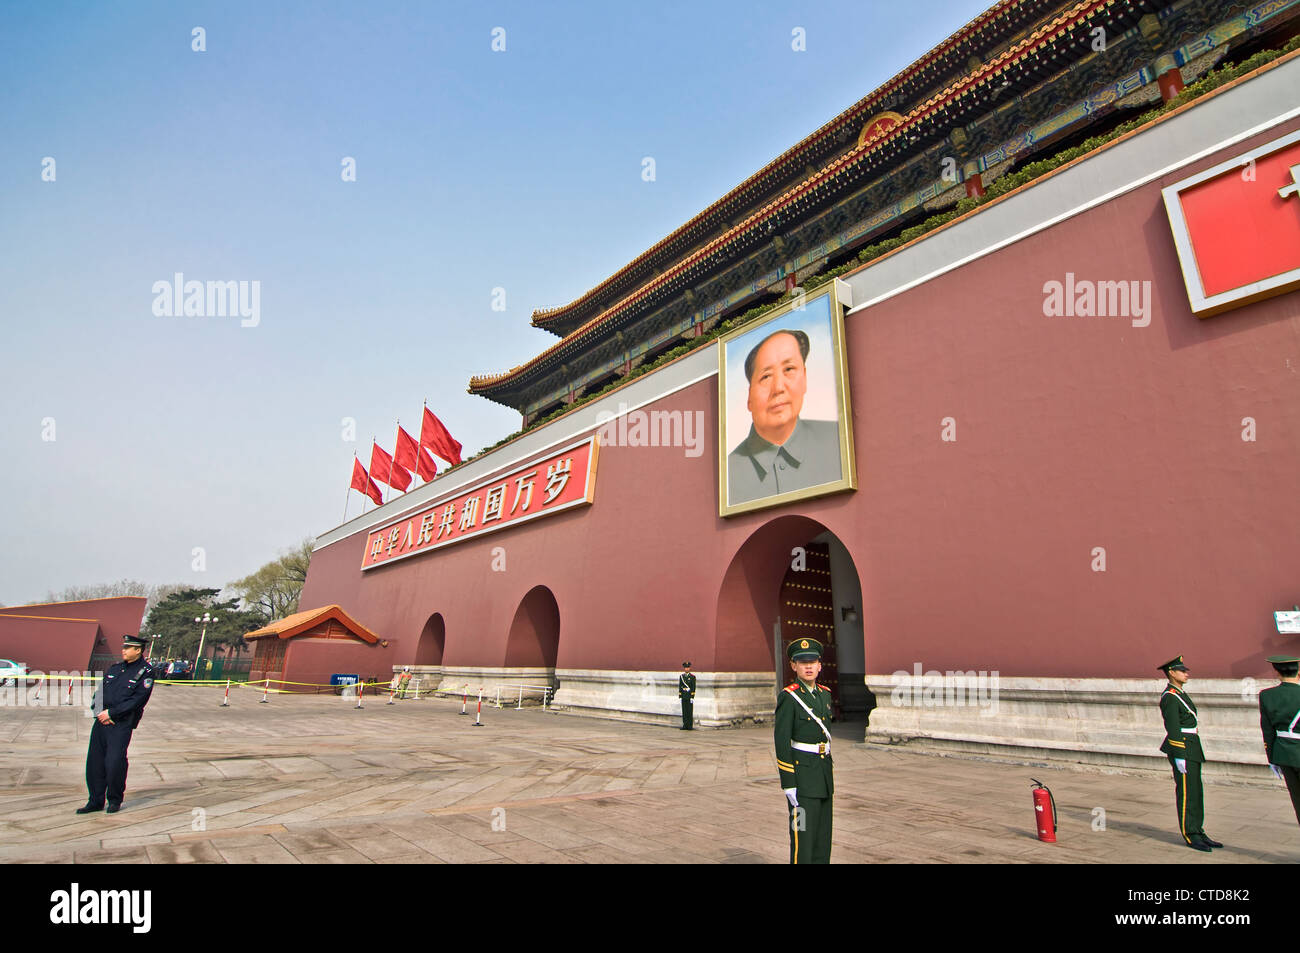 Vista laterale della porta di Tiananmen, separando il luogo di Tiananmen dalla Città Proibita - Pechino (Cina) Foto Stock